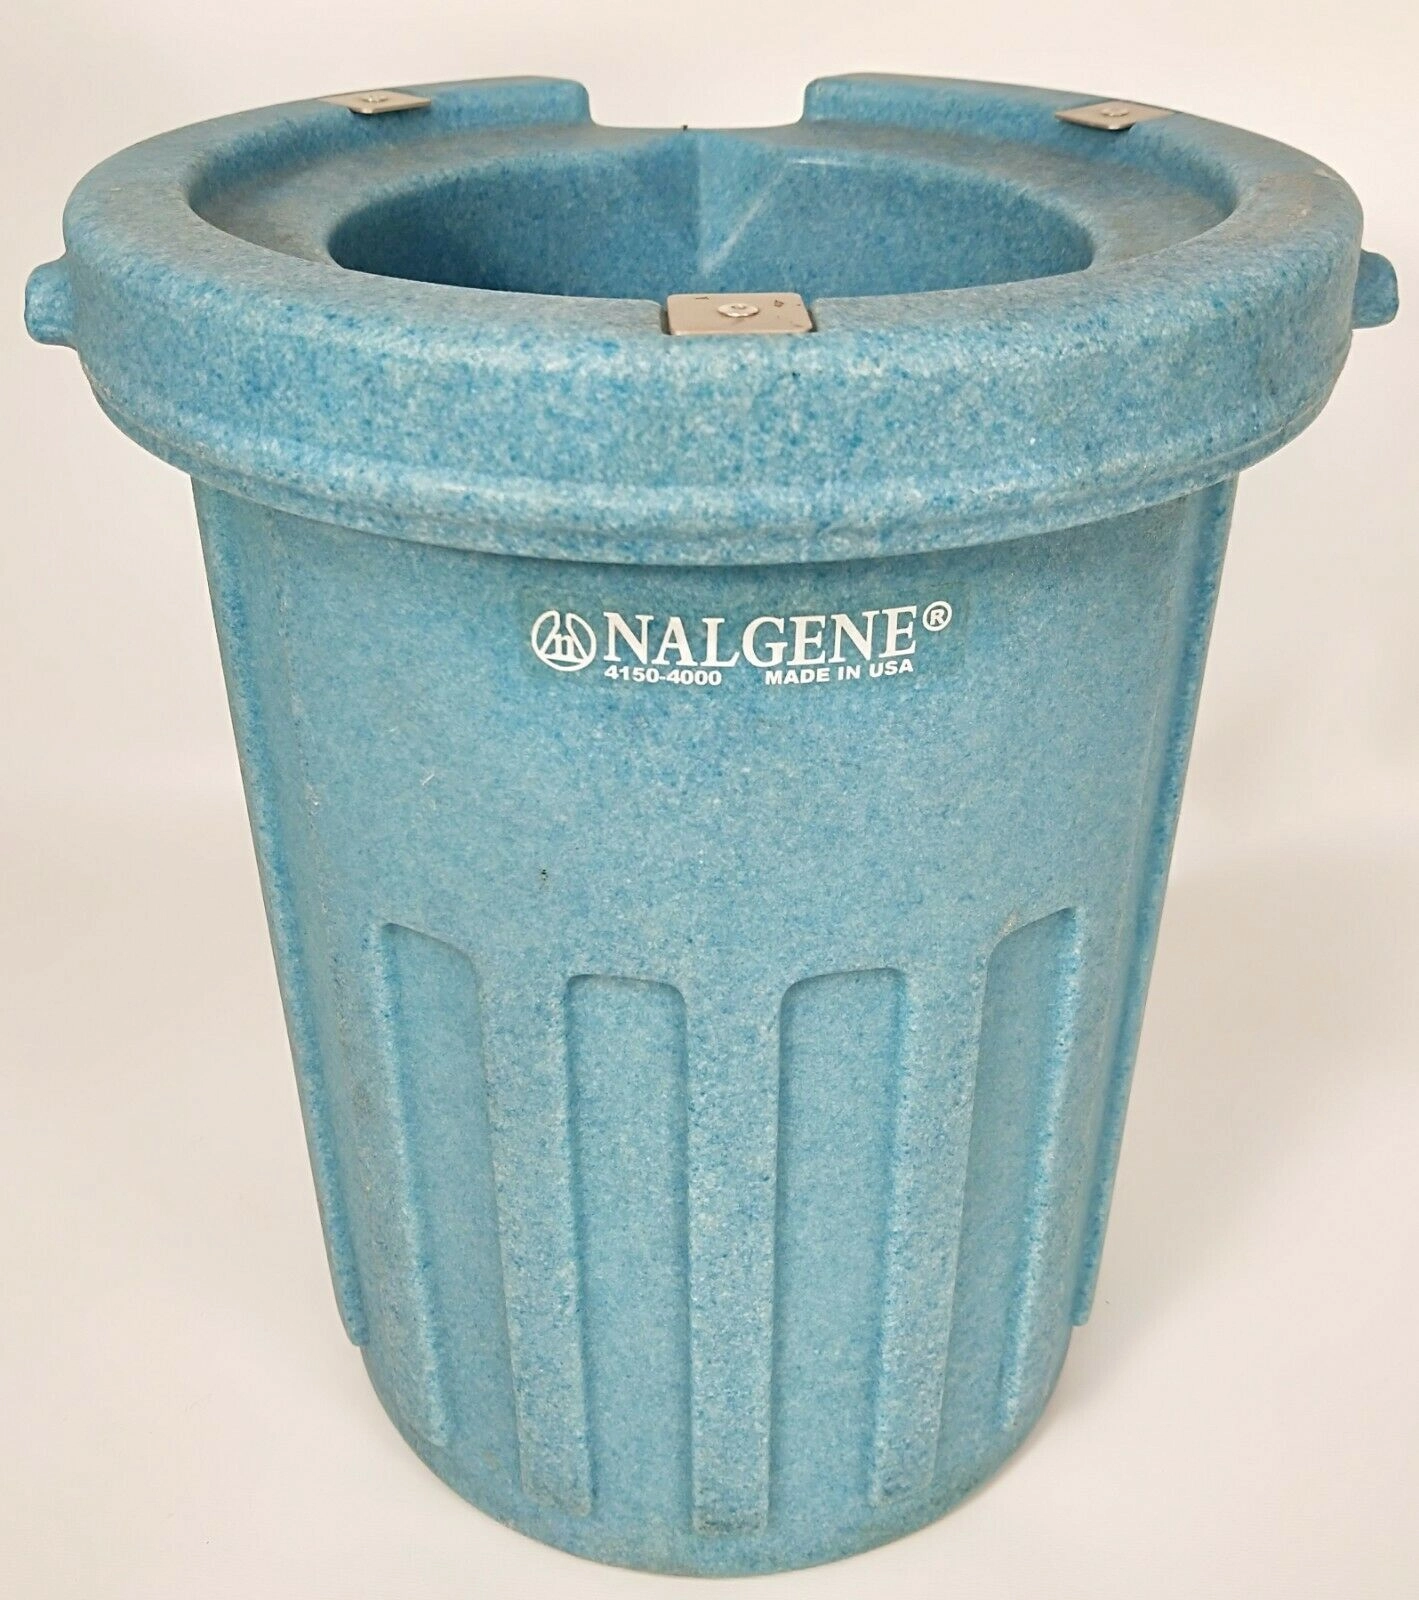 Nalgene 4150-4000 All-Plastic Dewar Flask - 4L